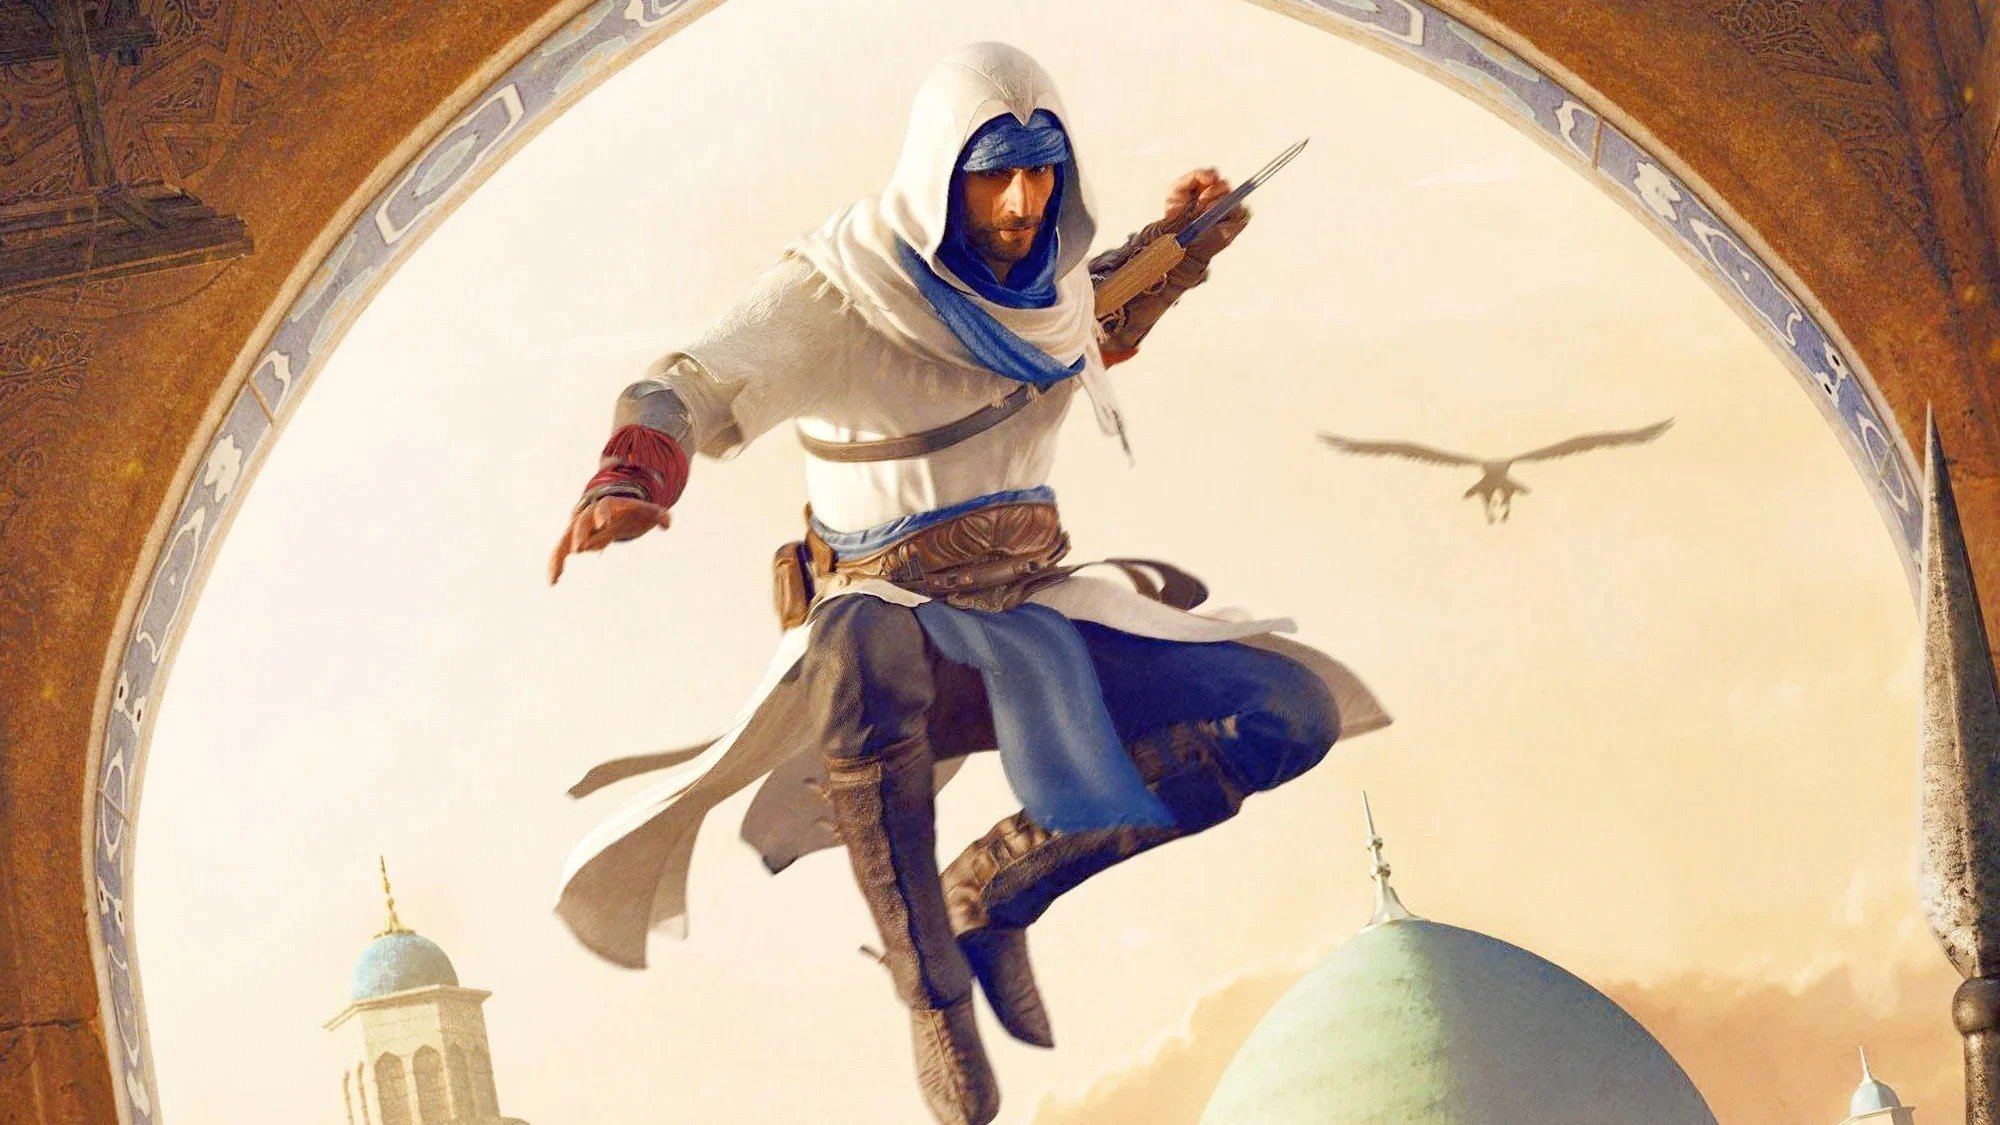 Assassin's Creed Mirage veut vous surprendre, un détail qui plait déjà aux fans